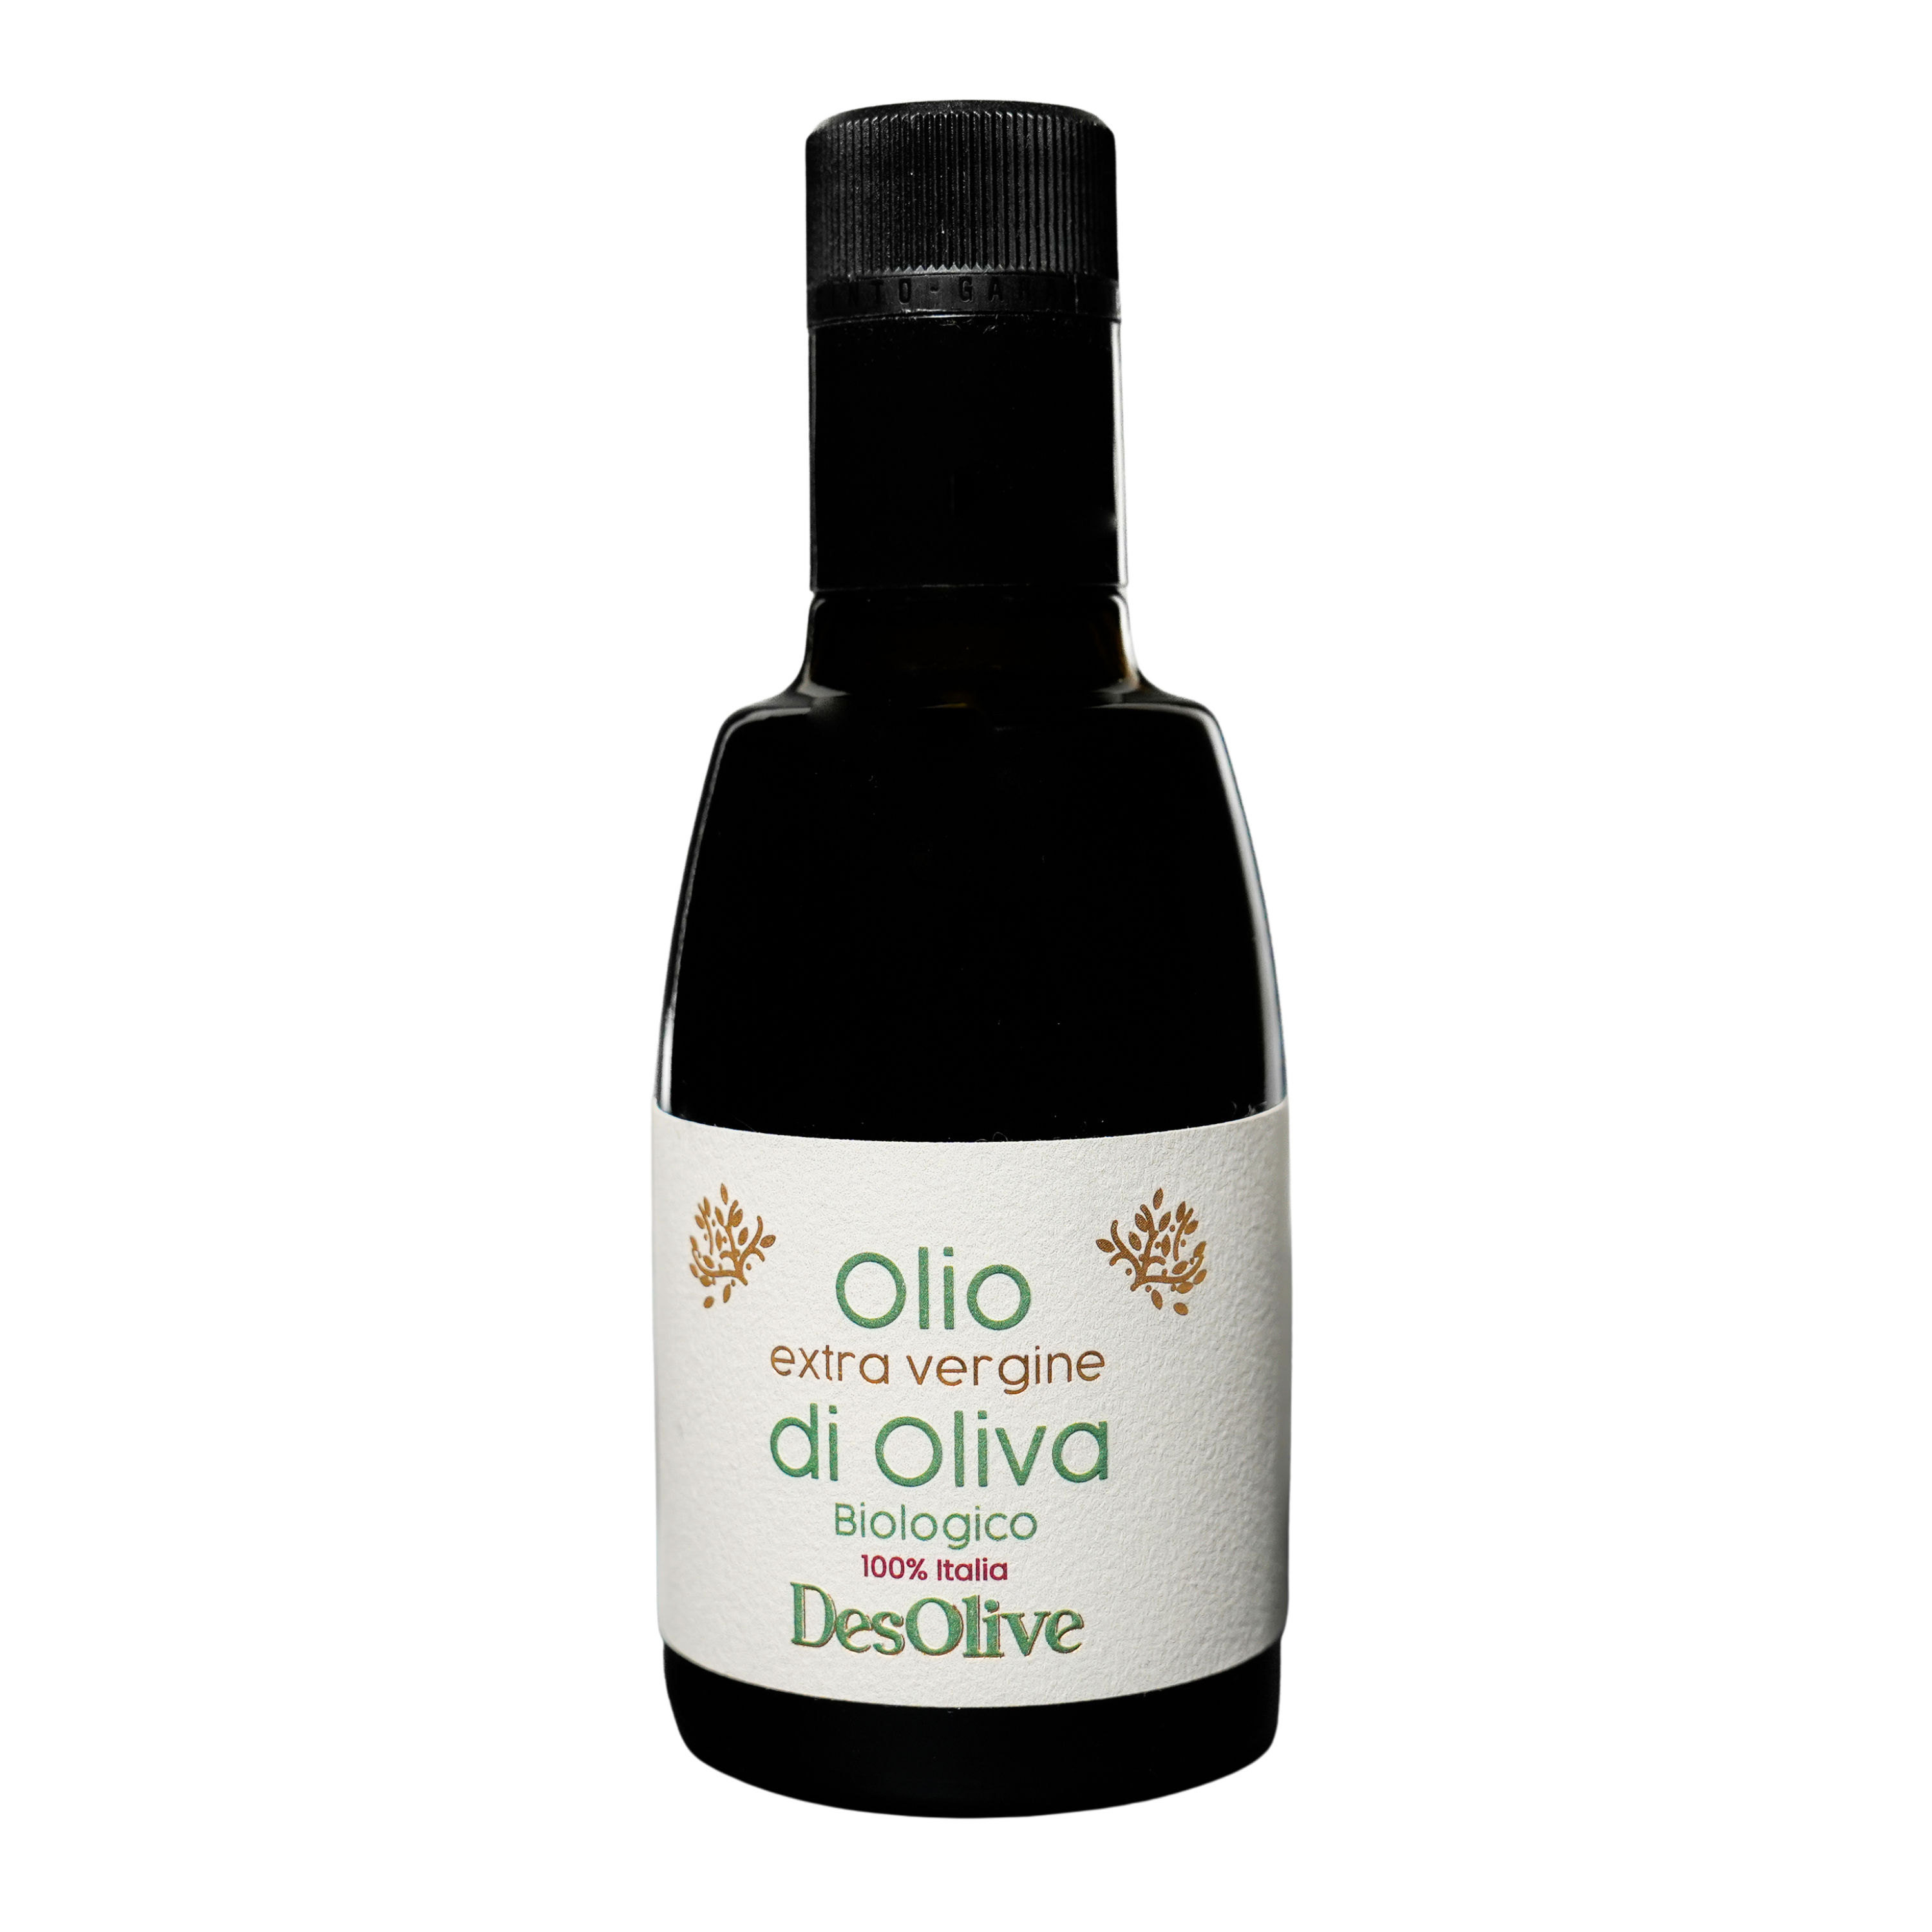 Bio- Olio extra Vergine di Oliva Toskana / kontrolliert: DE-ÖKO-034